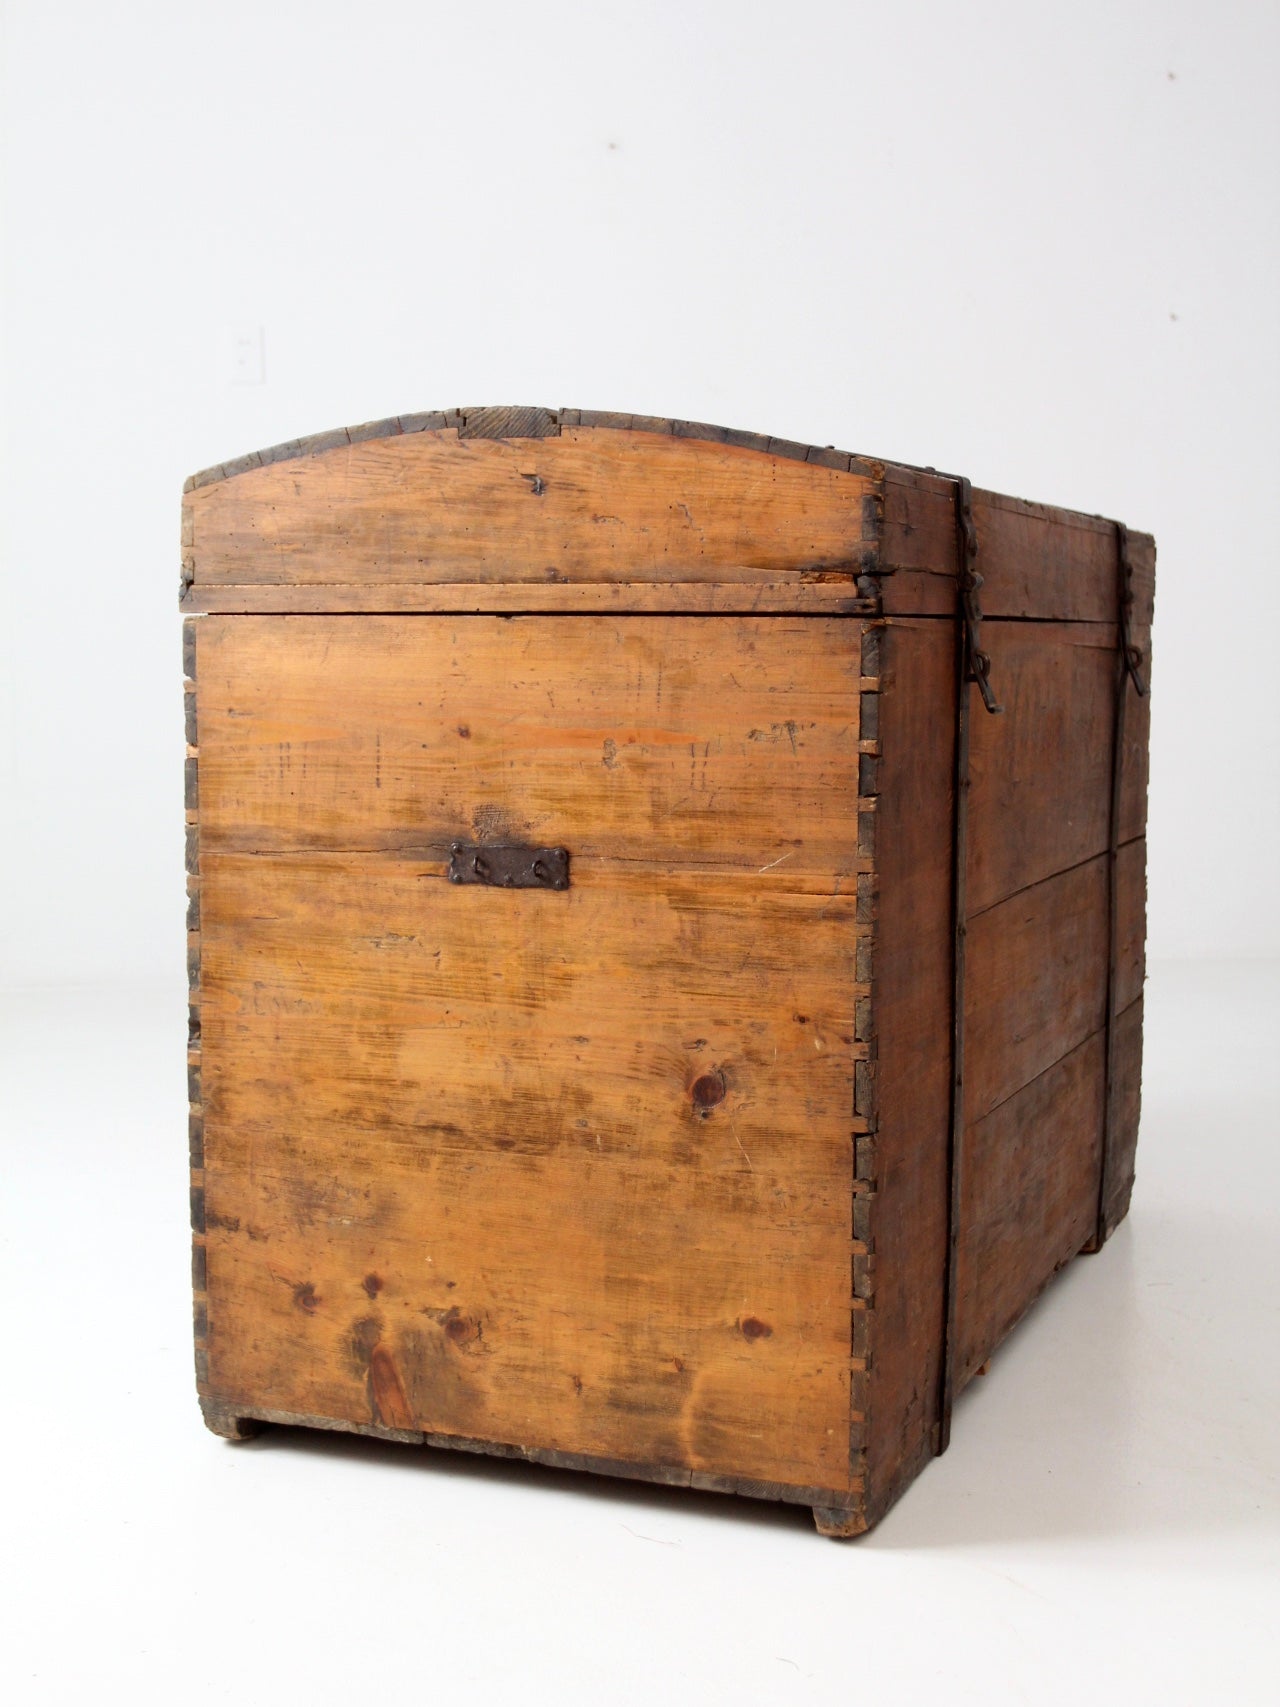 antique wooden chest – 86 Vintage